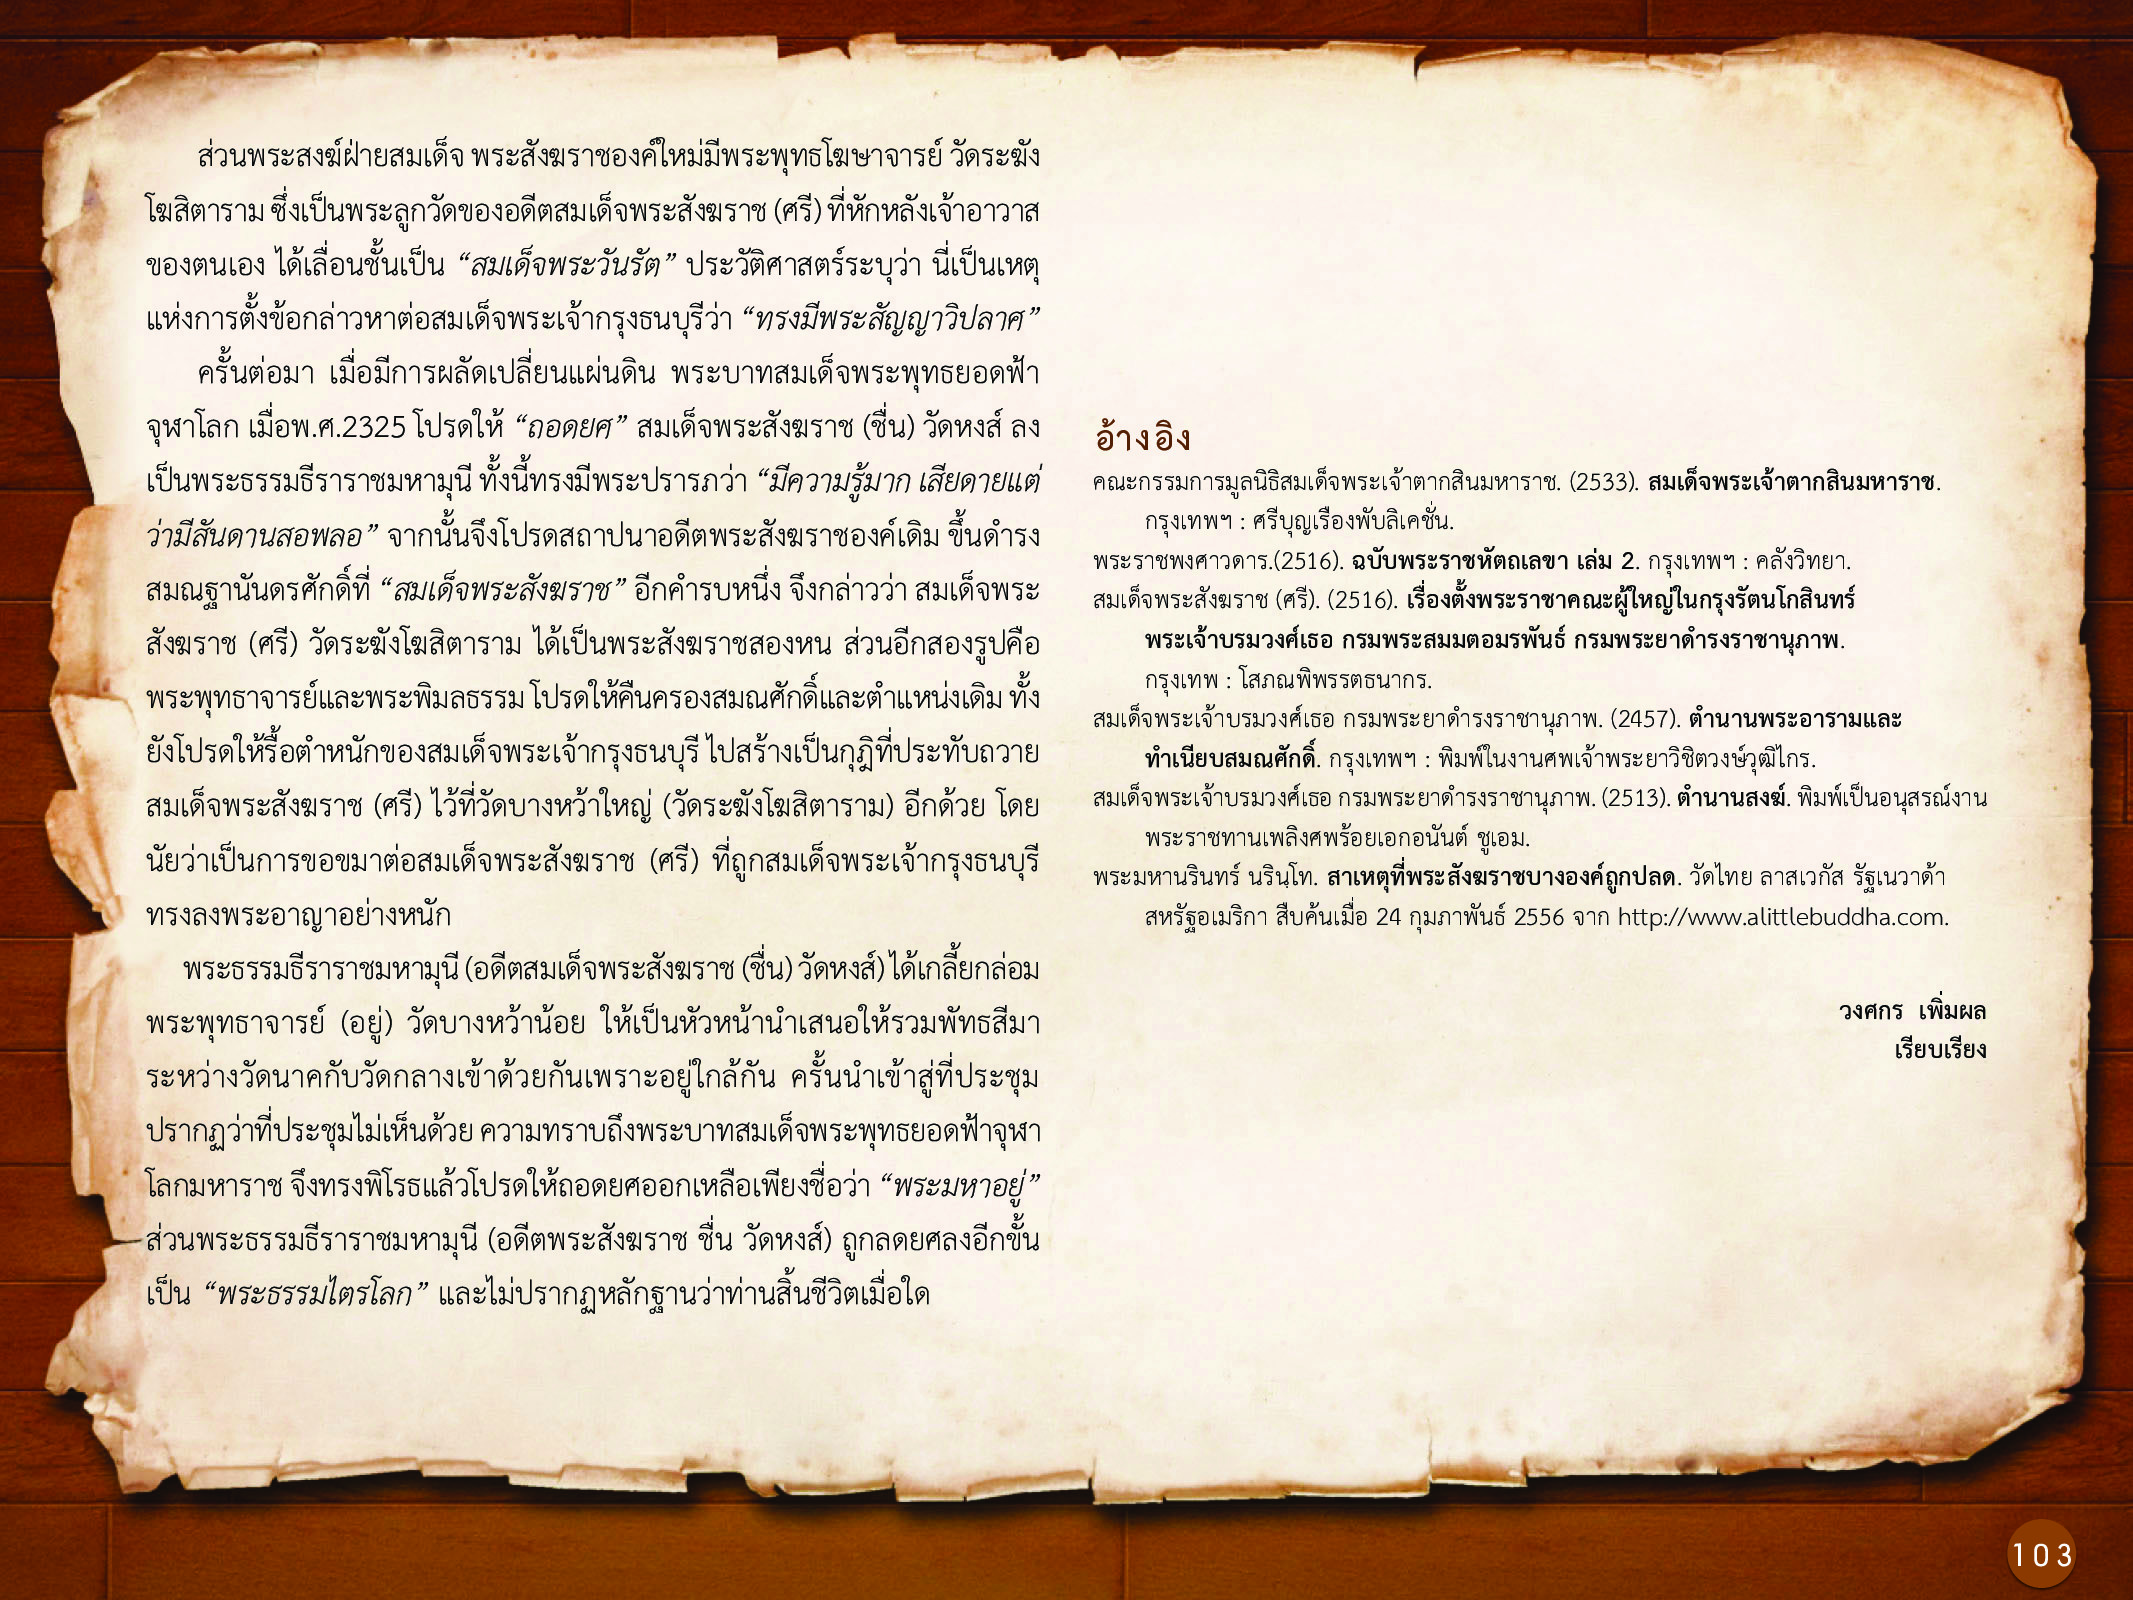 ประวัติศาสตร์กรุงธนบุรี ./images/history_dhonburi/103.jpg